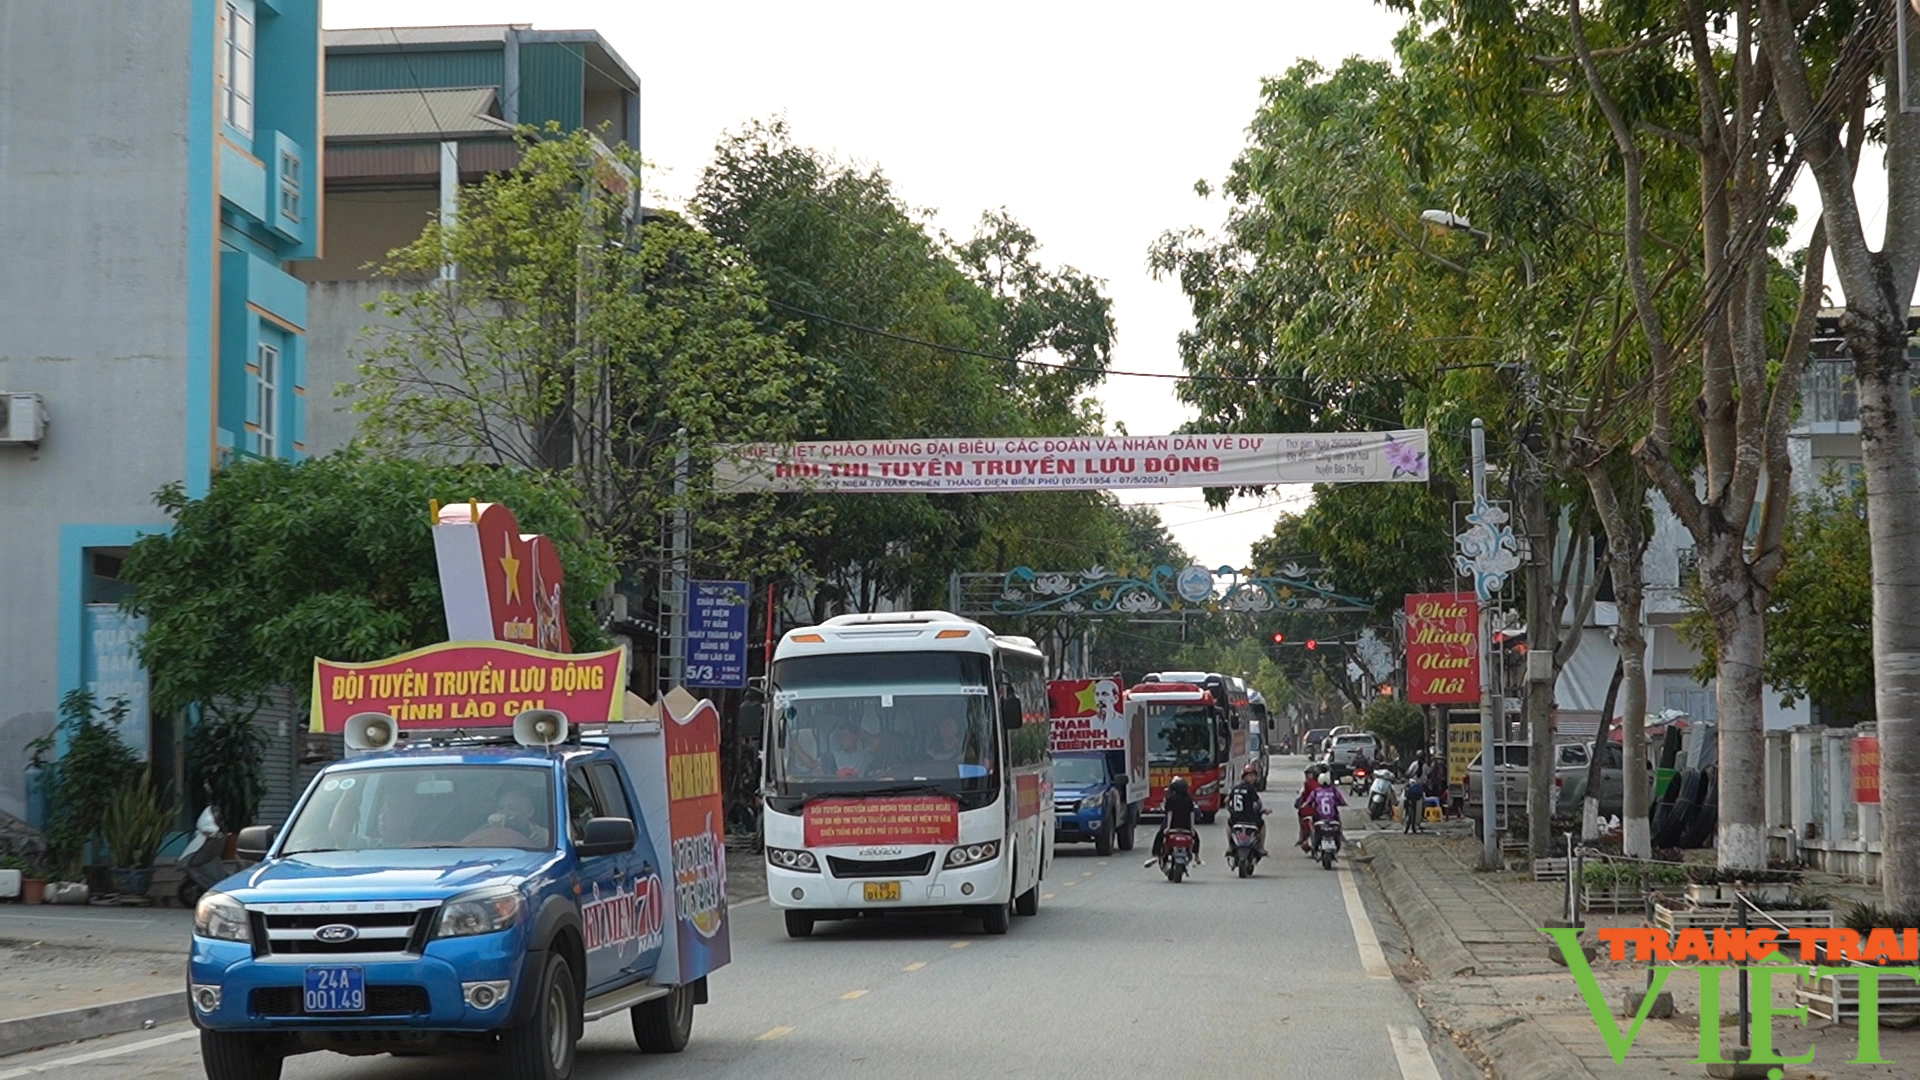 Tưng bừng hội thi "Về với Điện Biên" ở một huyện của Lào Cai, thu hút hàng nghìn khán giả- Ảnh 3.